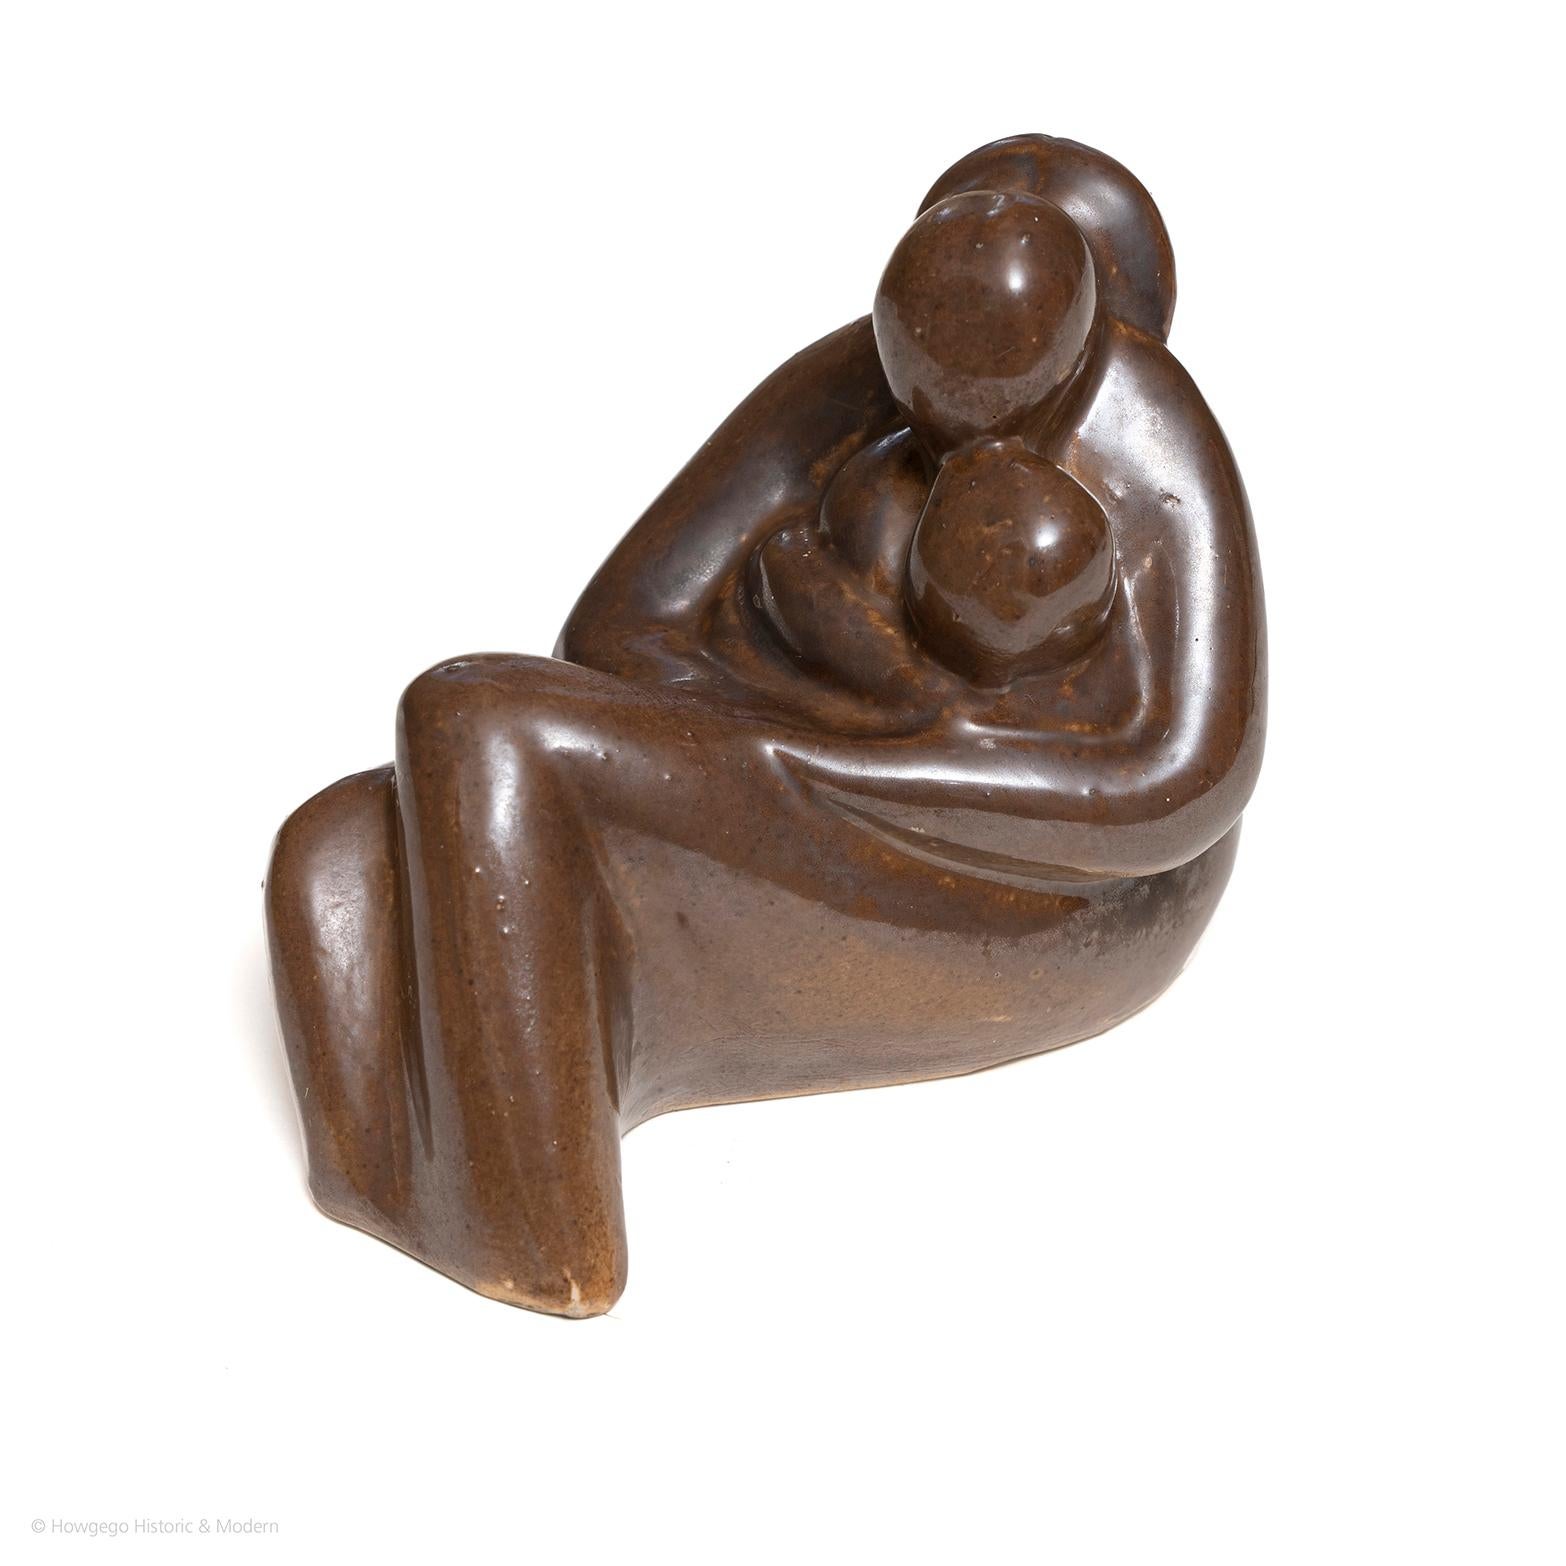 Eine kleine, 12,5 cm hohe biomorphe Keramikskulptur einer Mutter, die zwei Kinder im Arm hält.  braune Glasur.  Der Boden ist mit dem Stempel 